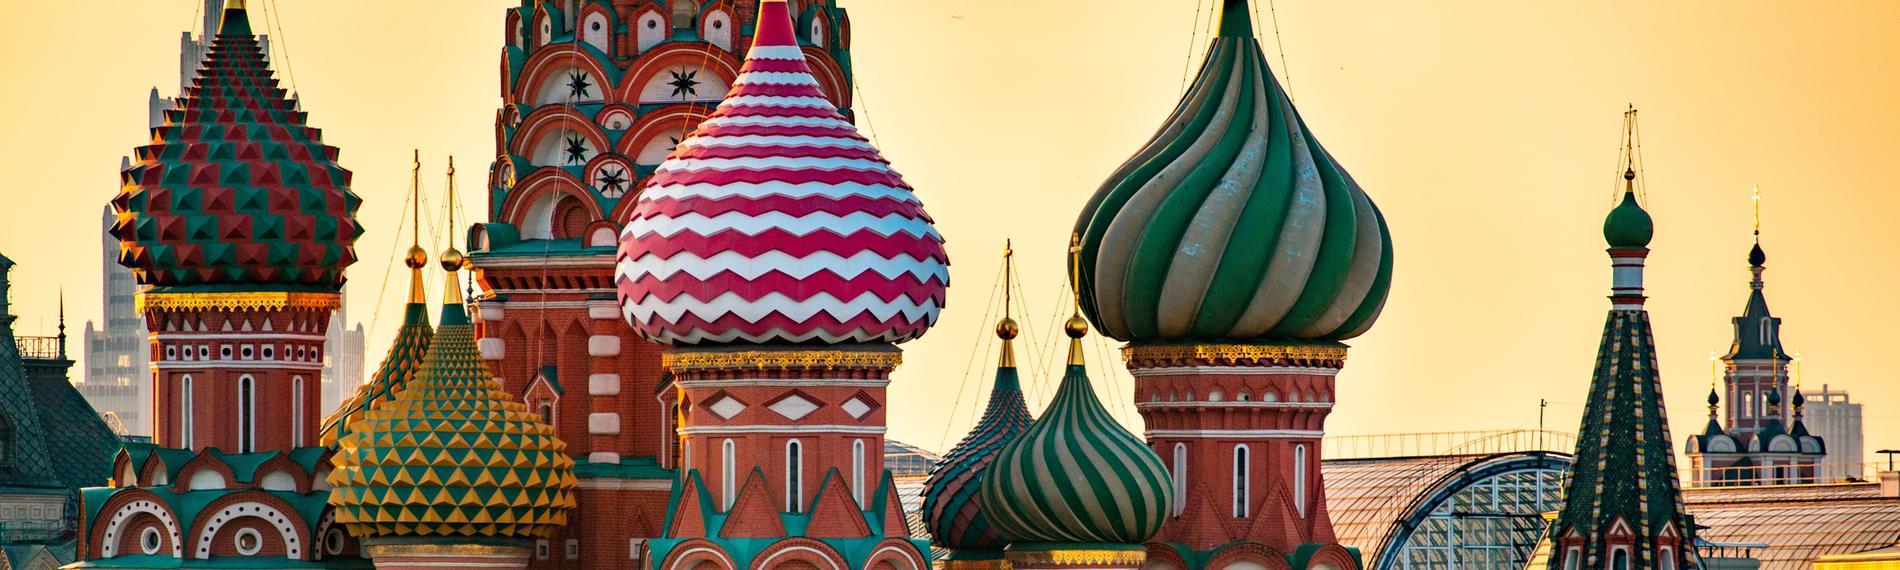 Eine russisch-orthodoxe Kirche mit vielen bunten Zwiebeltürmen.